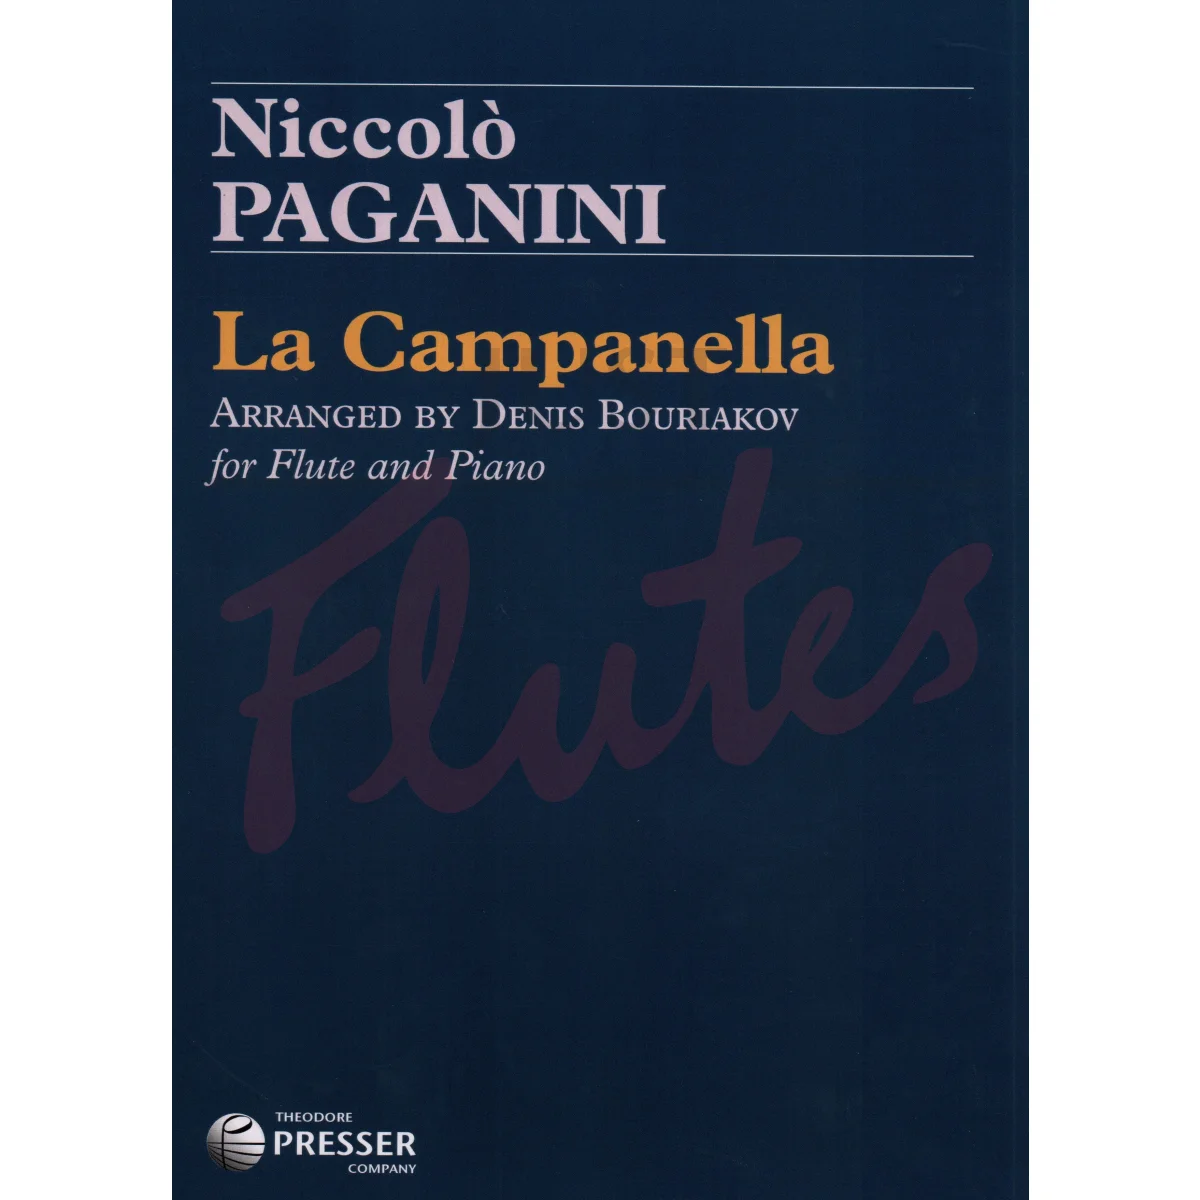 La Campanella for Flute and Piano